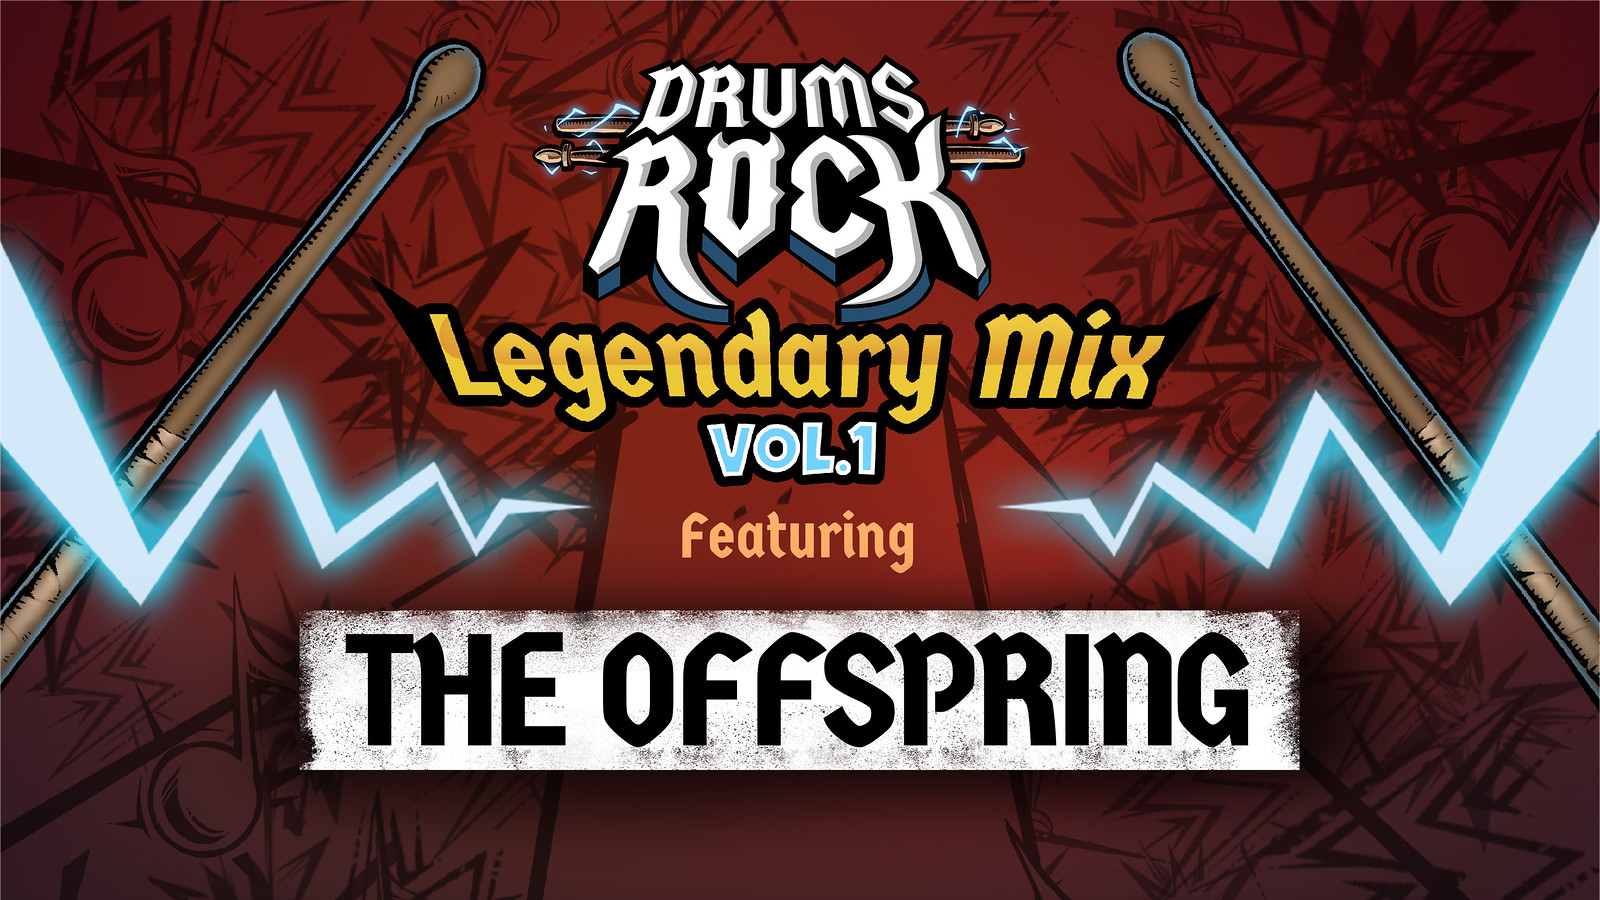 53231845457 2ebdb4c1b5 h - Der Drums Rock DLC Legendary Mix Vol I mit The Offspring ist jetzt erhältlich